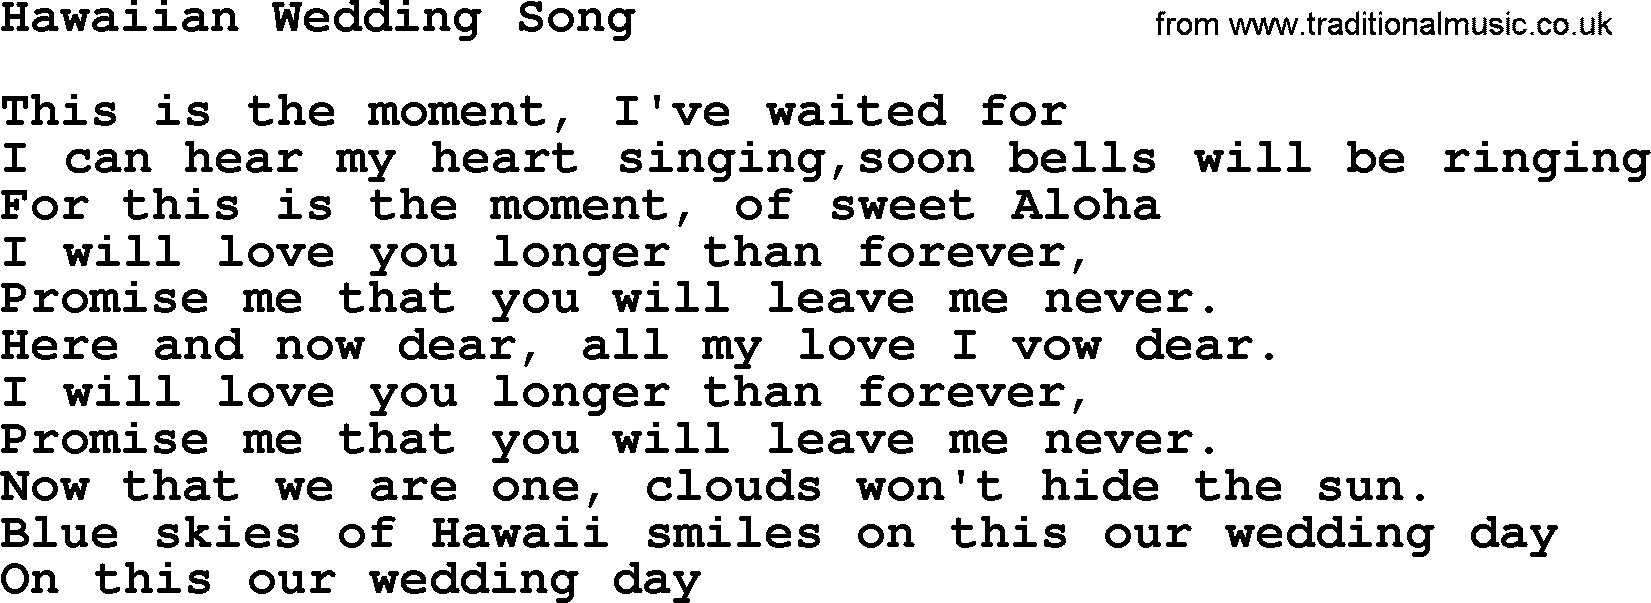 Marty Robbins song: Hawaiian Wedding Song, lyrics